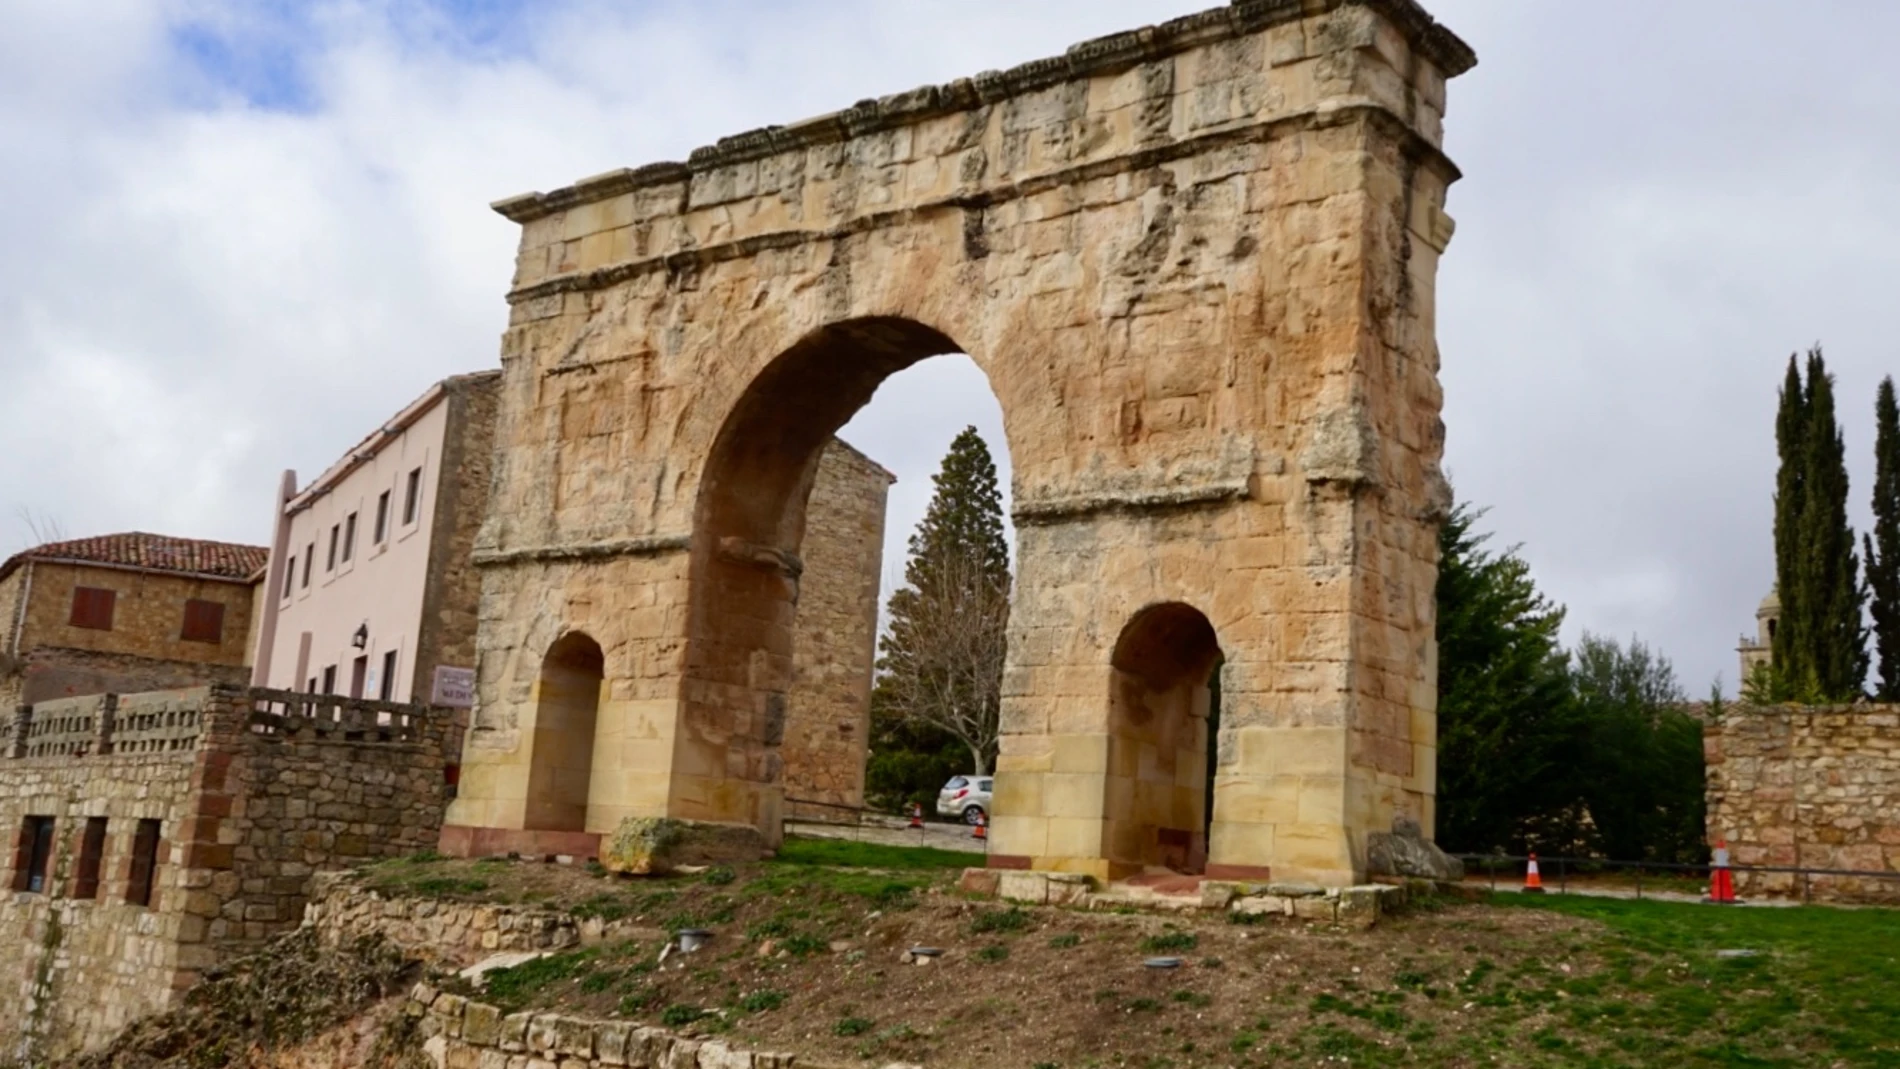 Puerta de la muralla romana de Medinaceli, datada en el siglo I.